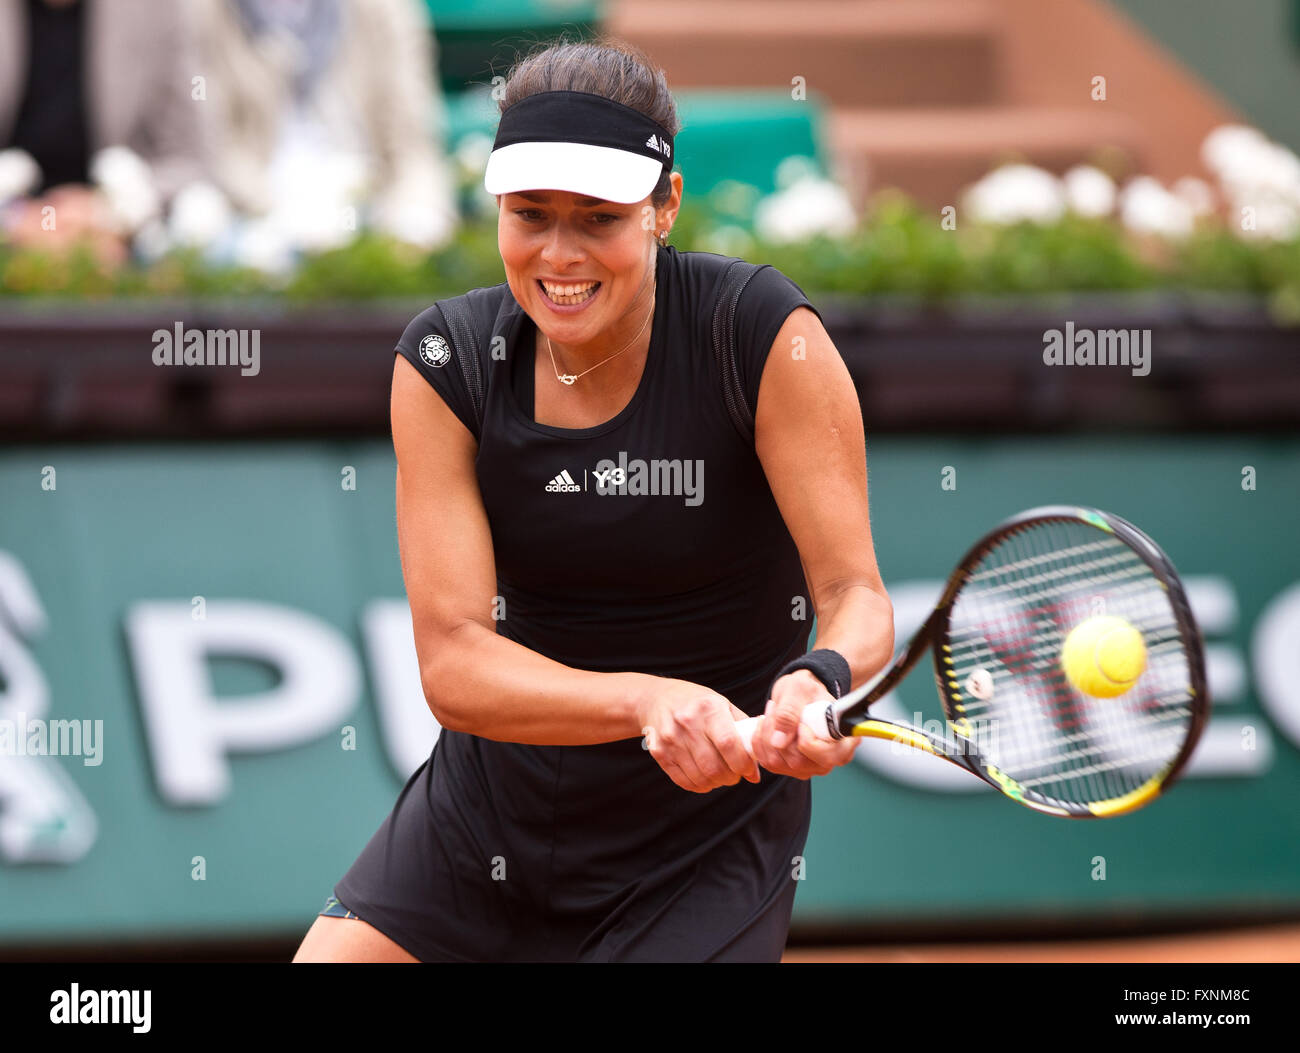 Ana Ivanovic (SRB), Open de France 2015 Grand Slam Tennis Turnier, Paris, France Banque D'Images